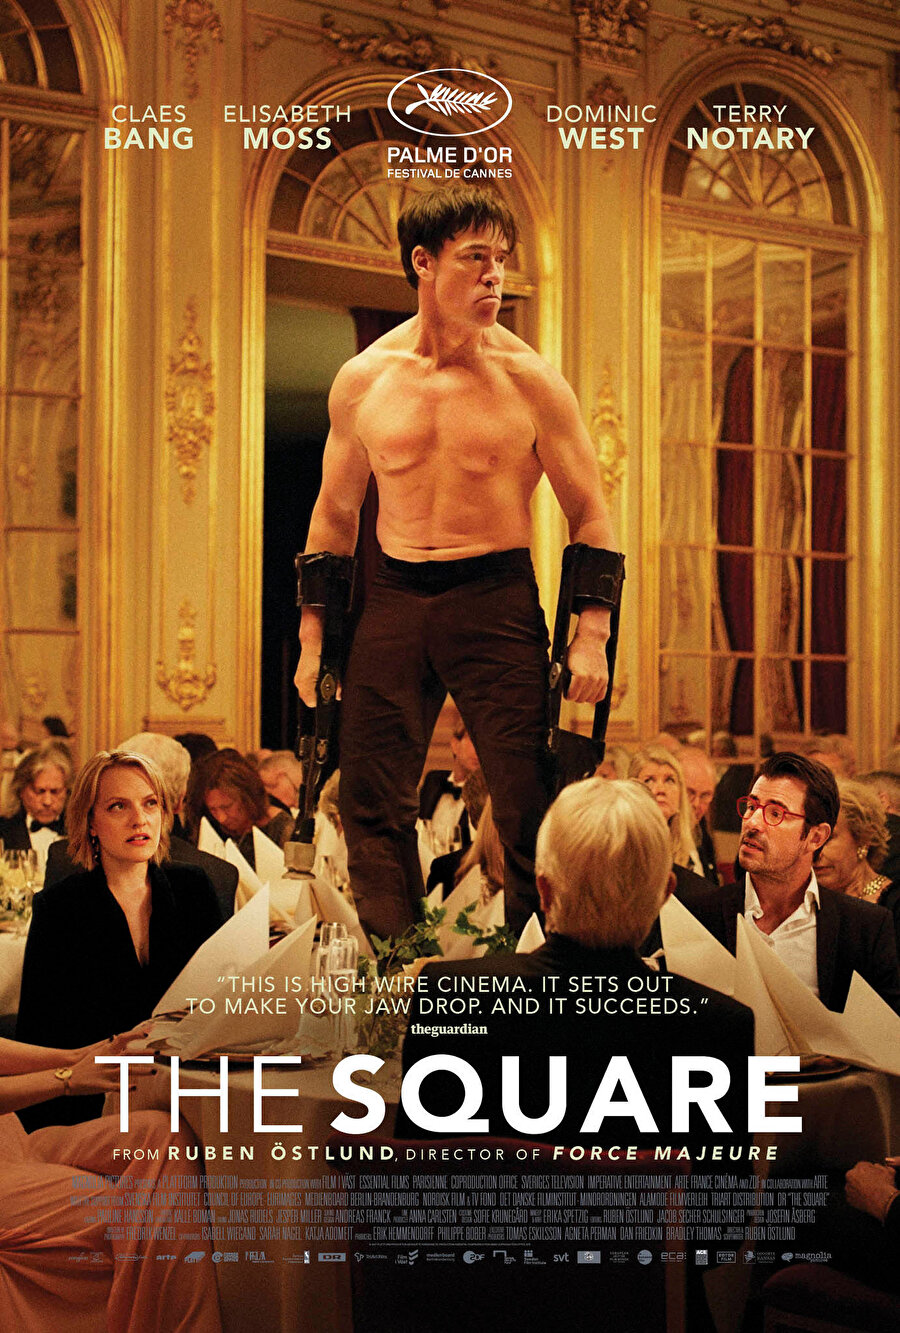 The Square, 70. Cannes Film Festivali’nden büyük ödül Altın Palmiye ile ayrılan The Square de Filmekimi programında. Turist (Force Majeure) filmiyle tanınan ve kara komedi türünde üreten Östlund’un son filmi sanat çevrelerini hicvediyor. Filmde, bir modern sanat müzesi küratörünün gözünden, yeni açılacak serginin PR kampanyası sırasındaki kriz anlatılıyor.